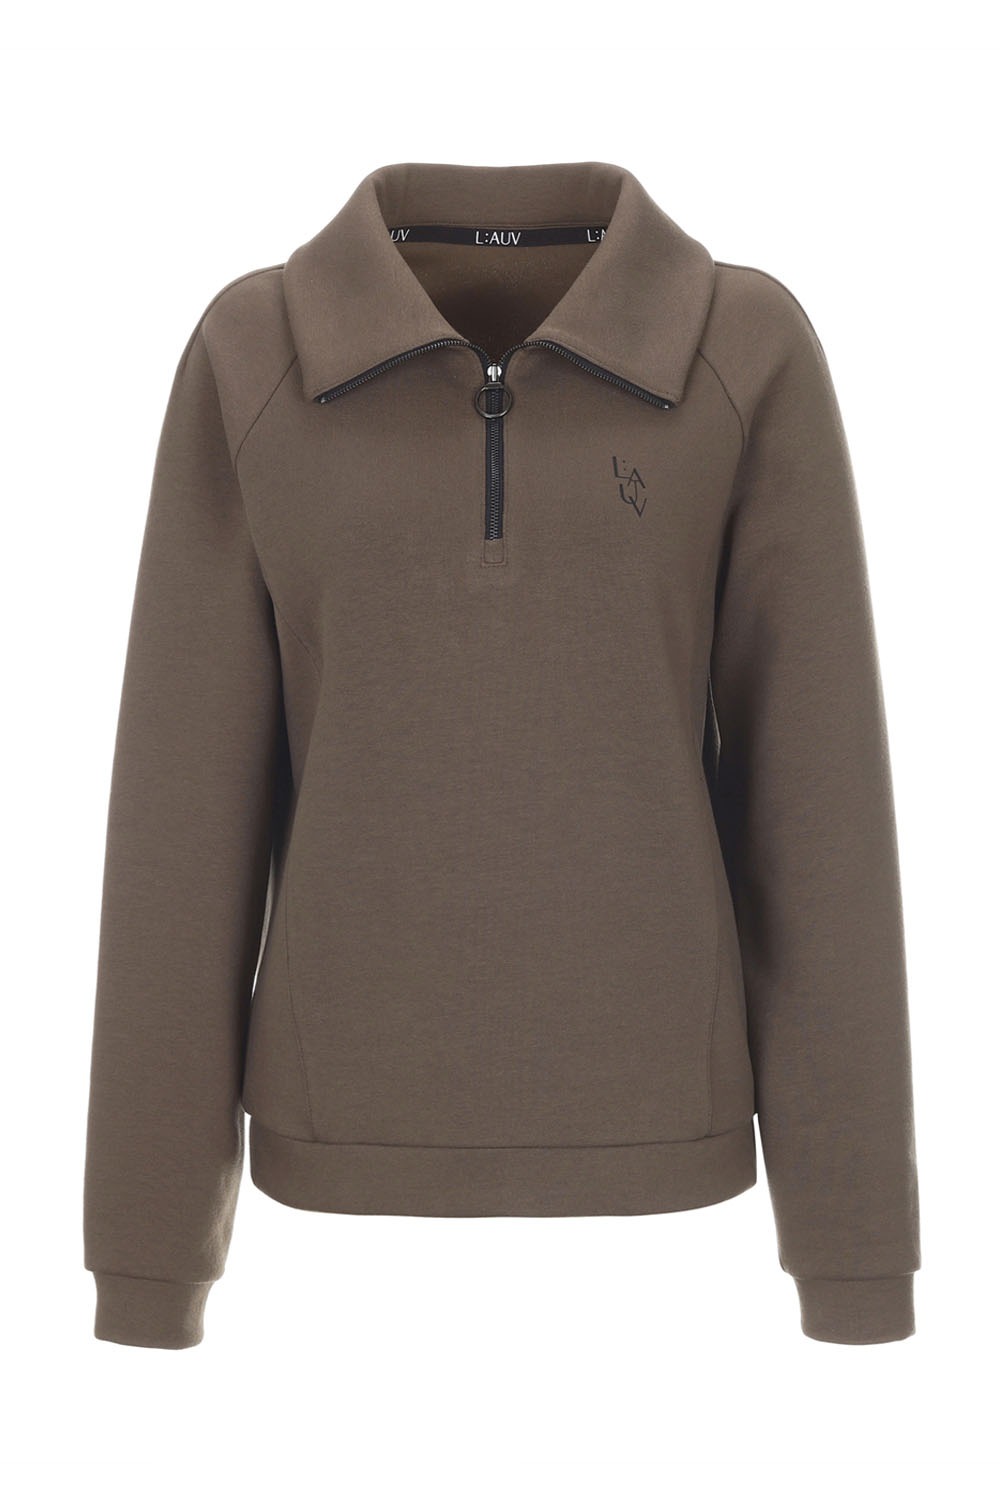 [10/4일 발송] Half Collar Zip-Up Sweatshirt (Brown) RICHEZ